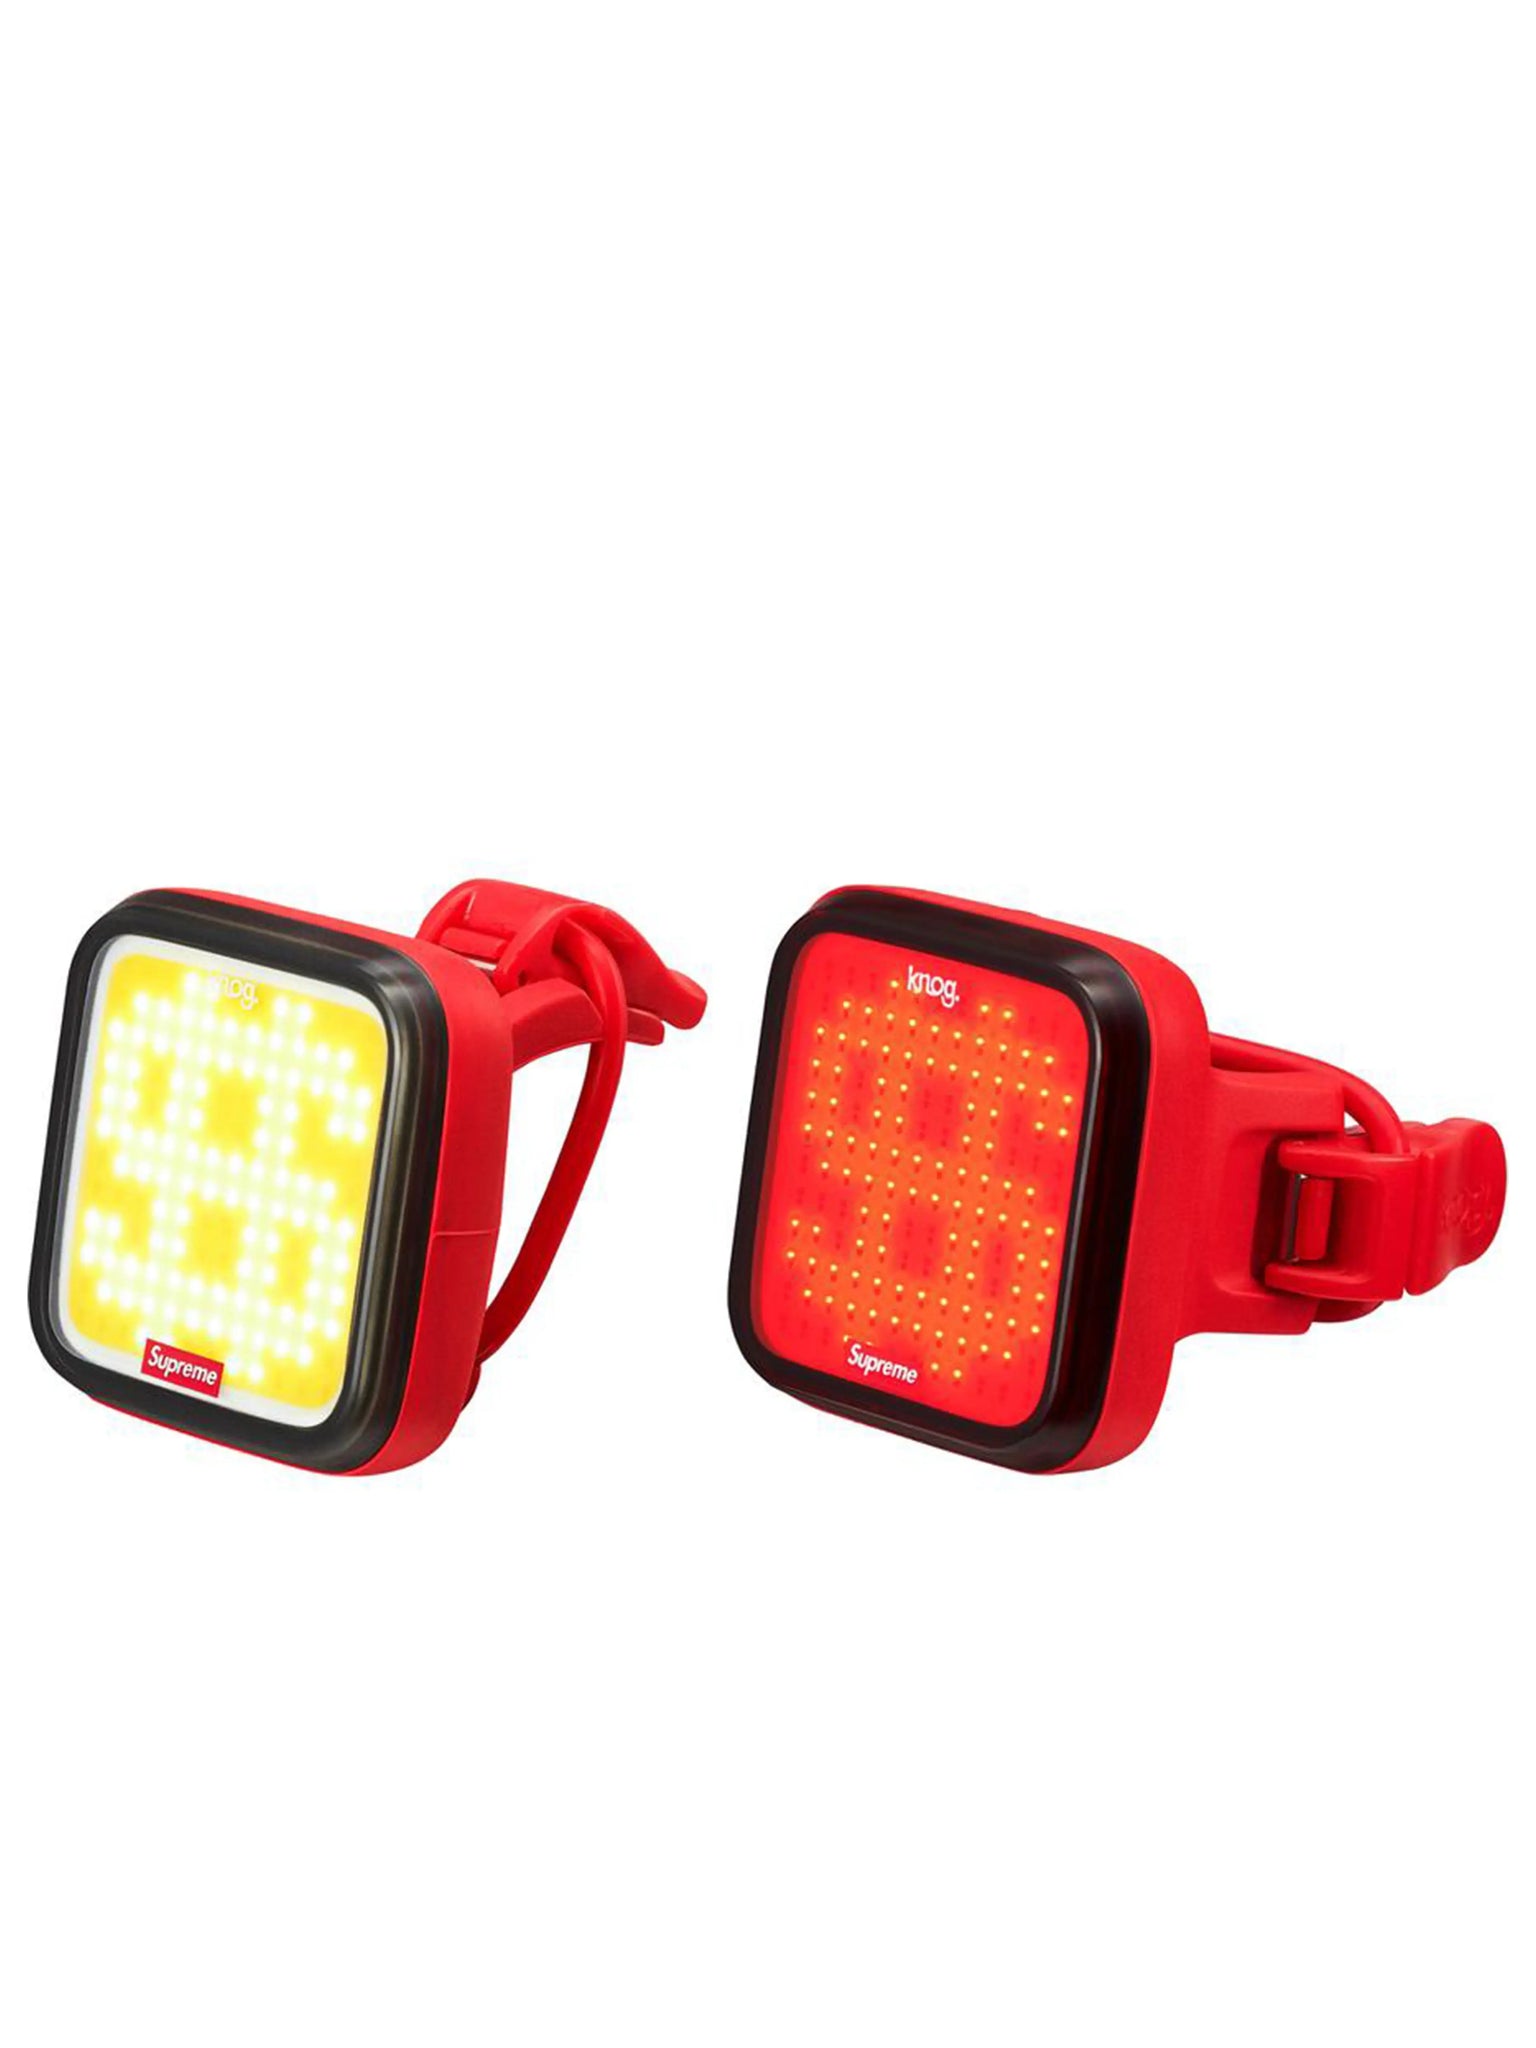 Suupreme Knog Blinder Bicycle Lights [Set of 2] Red Prior